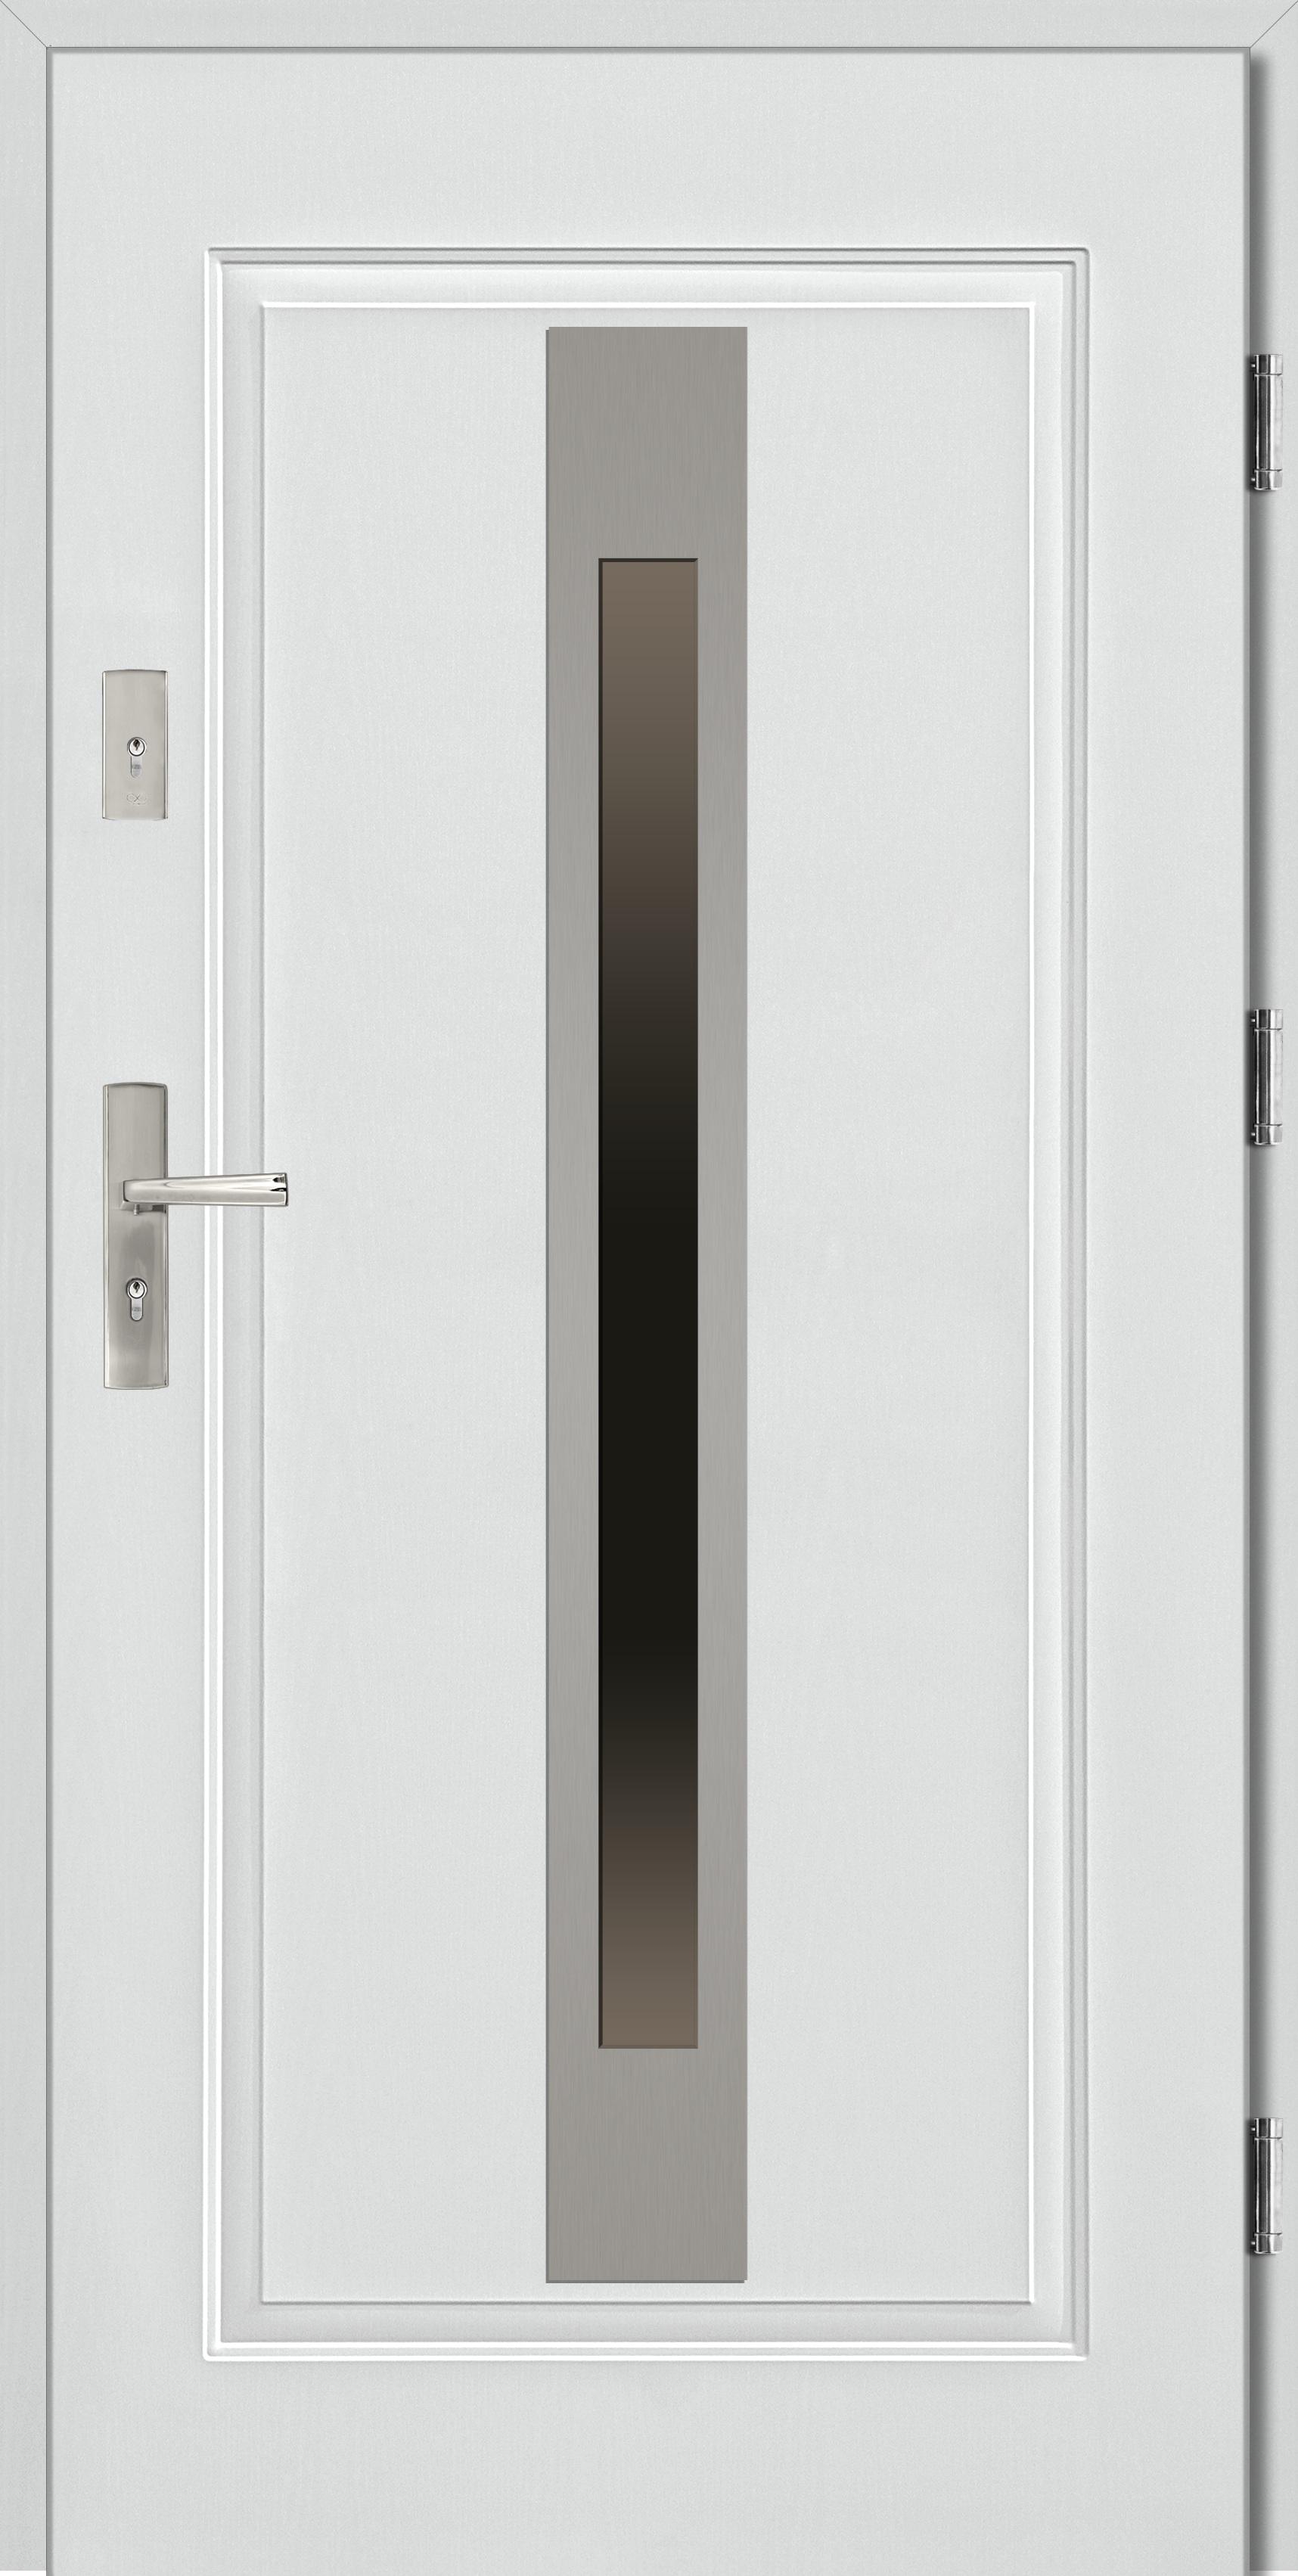 Drzwi tłoczone stalowe ANTYDOOR, woj. podlaskie